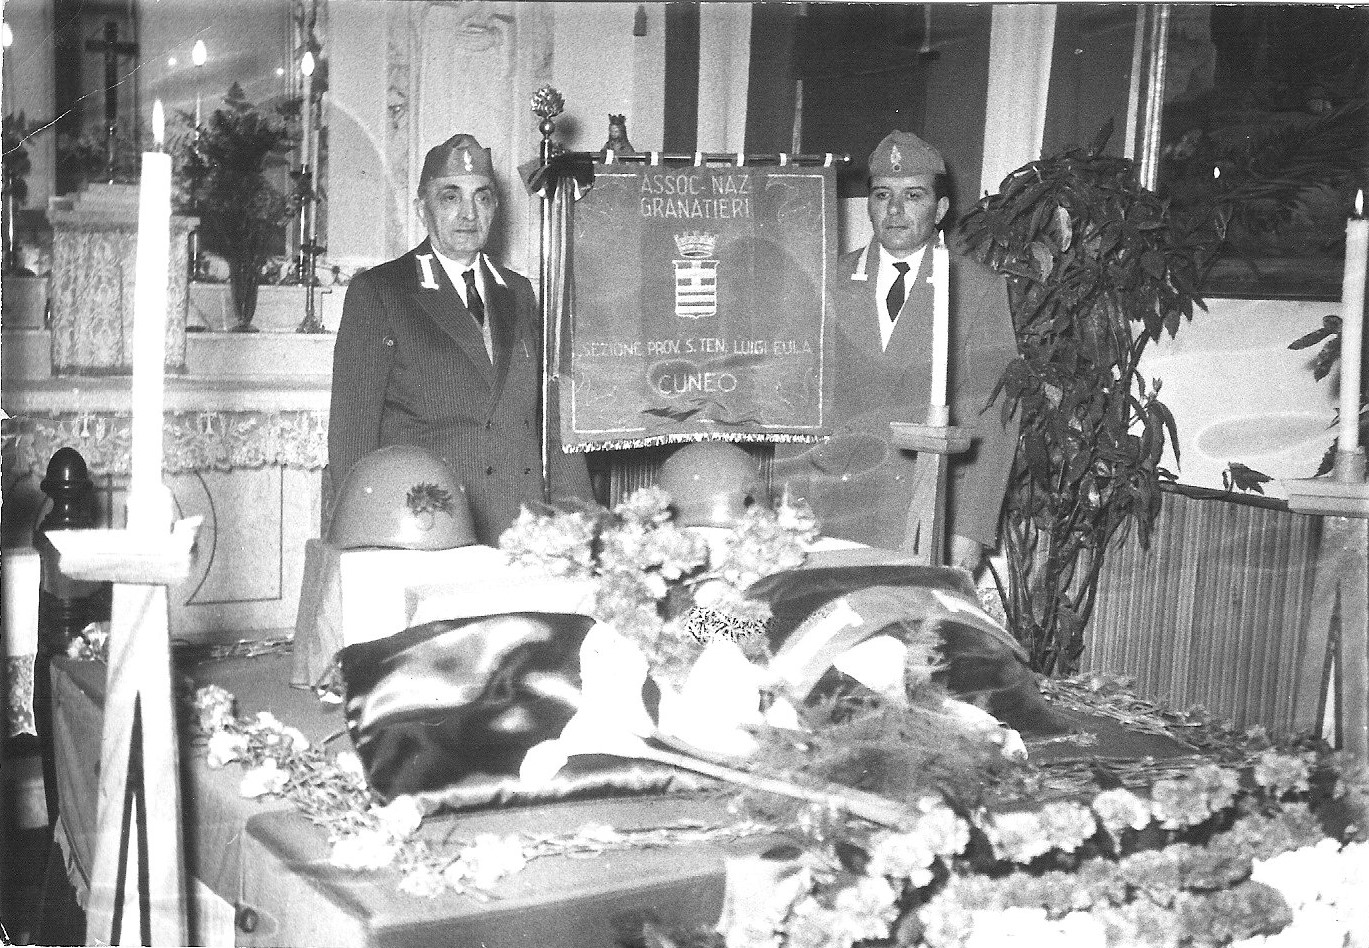 1959 -Rientro in Patria delle spoglie del S.Ten. M.A.V.M. nella Cappella del 2° Rgt Alpini